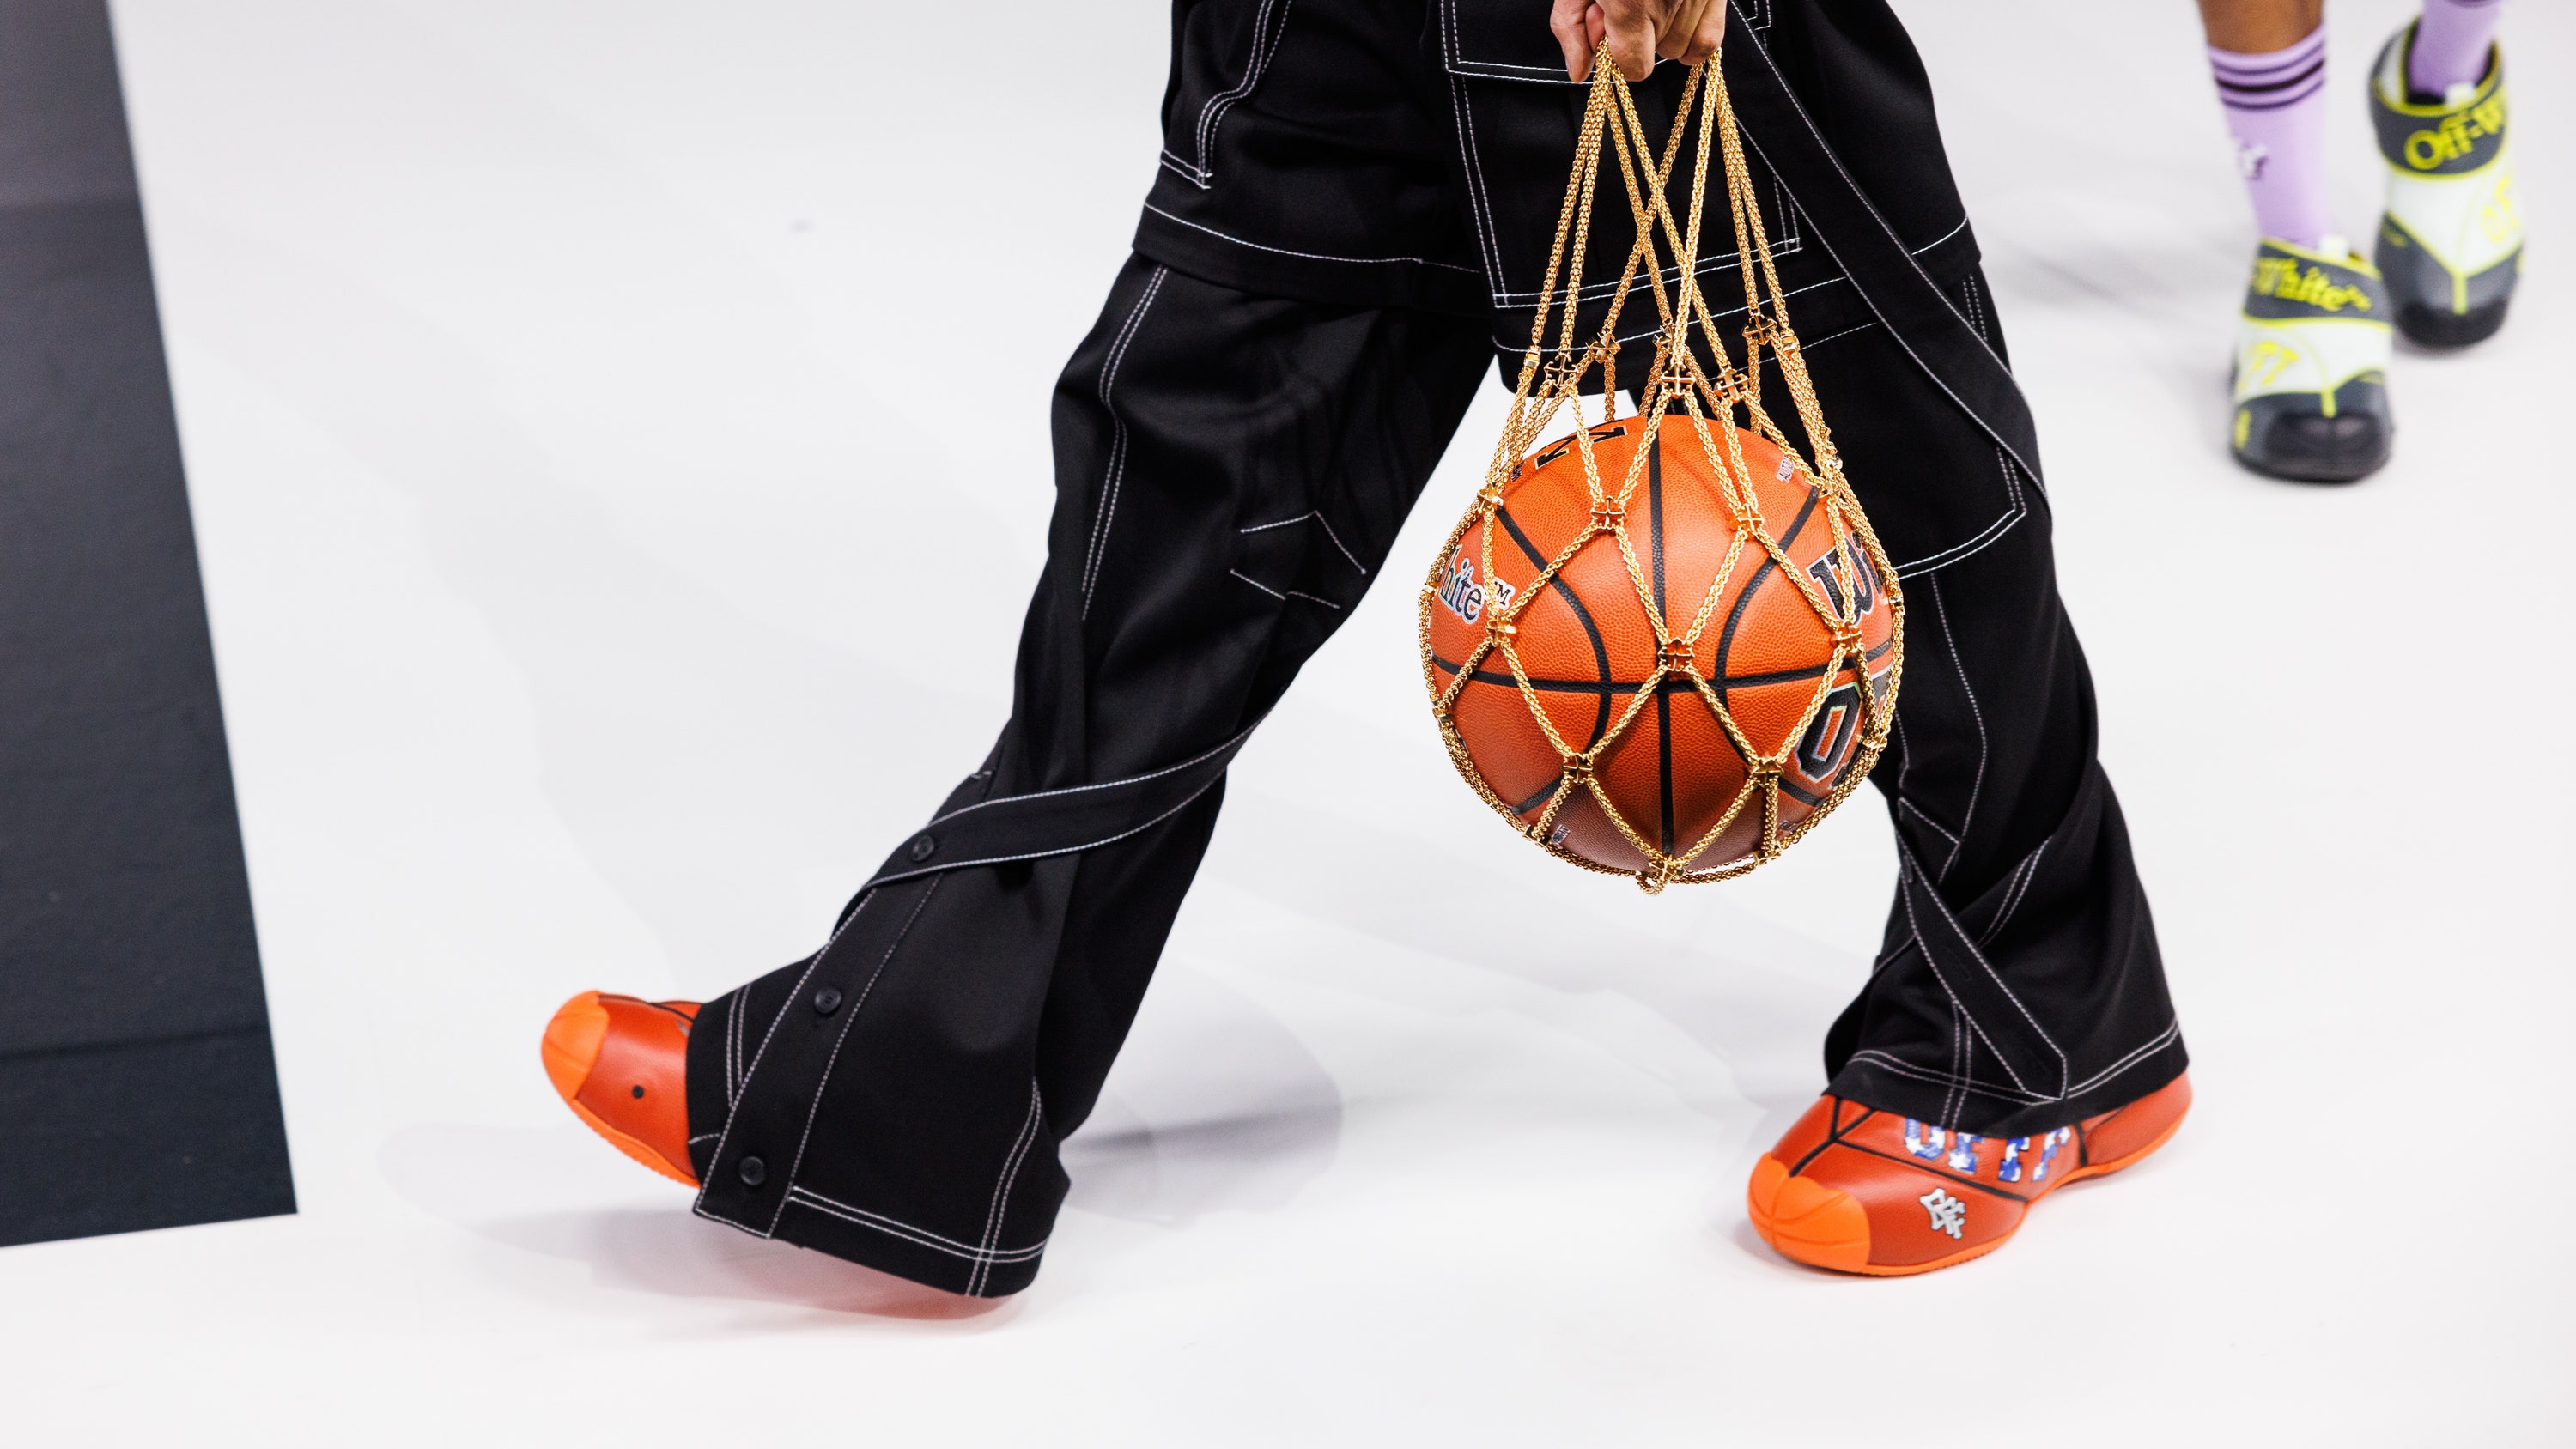 off-white zeigt einen der ausgefallensten sneaker - er sieht aus wie ein basketball